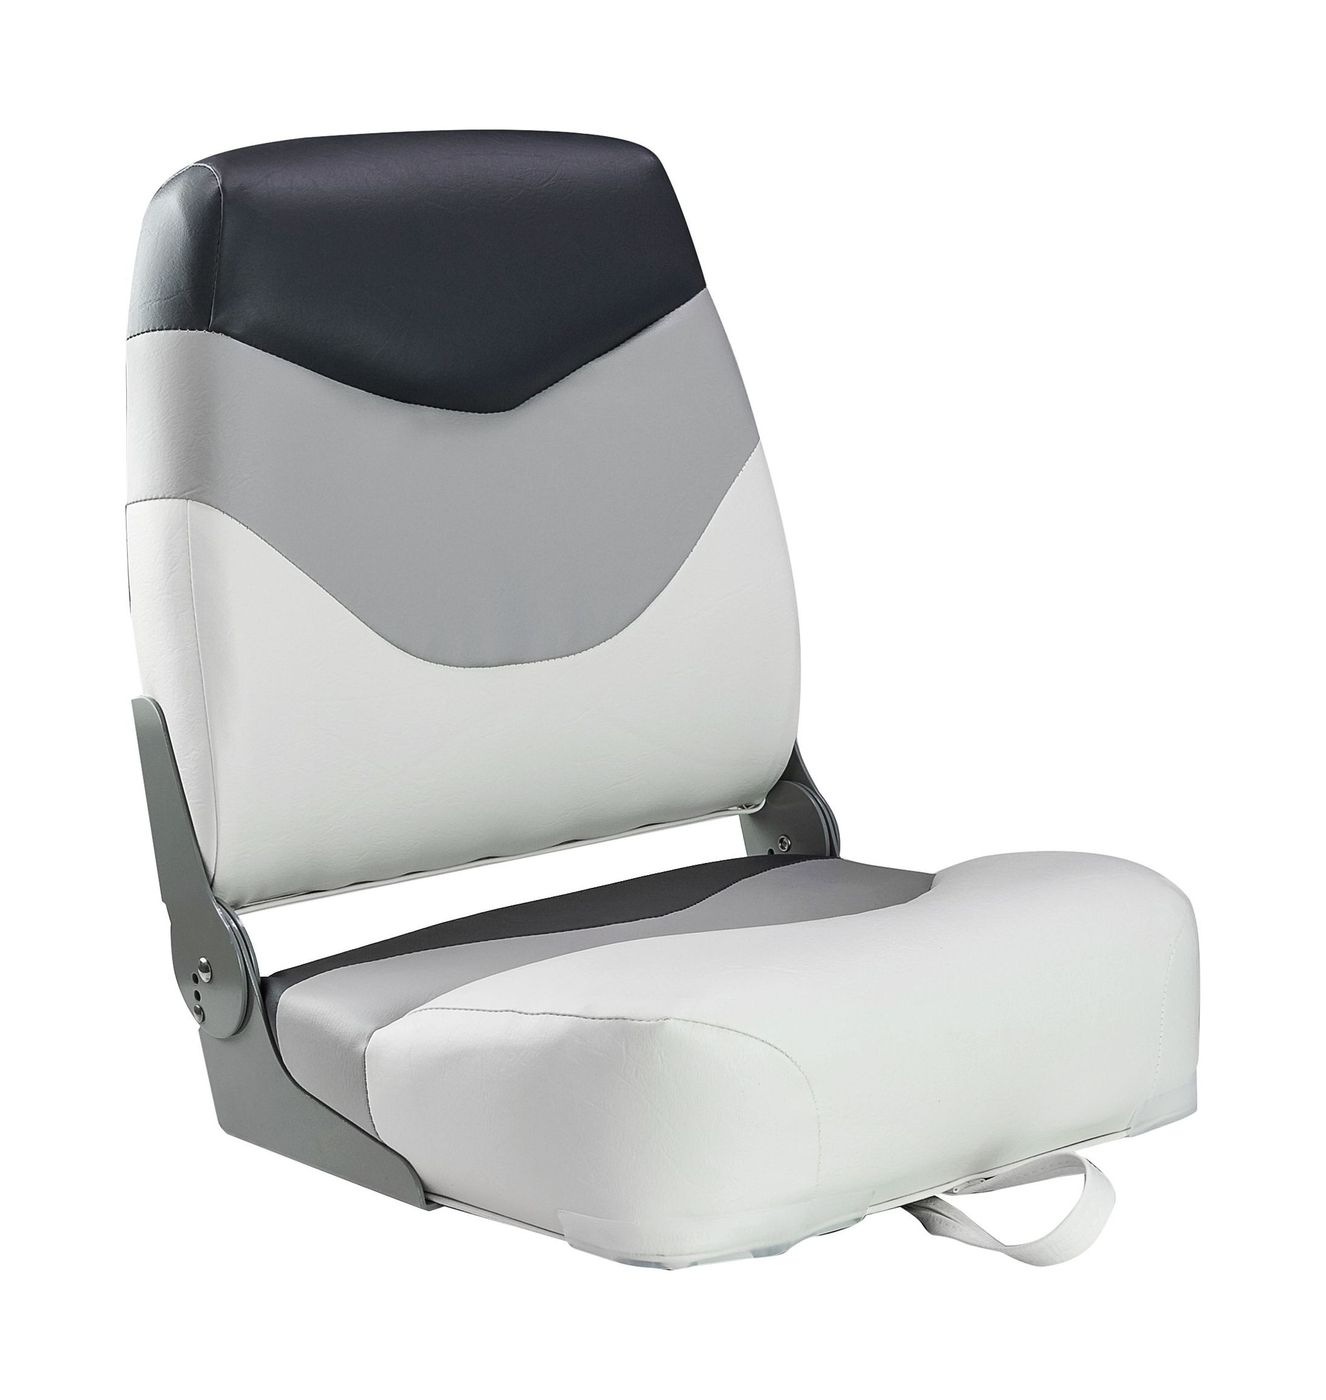 Кресло мягкое складное Premium, обивка винил, цвет белый/серый/угольный, Marine Rocket 75128WGC-MR кресло складное мягкое skipper серый темно серый 1061017